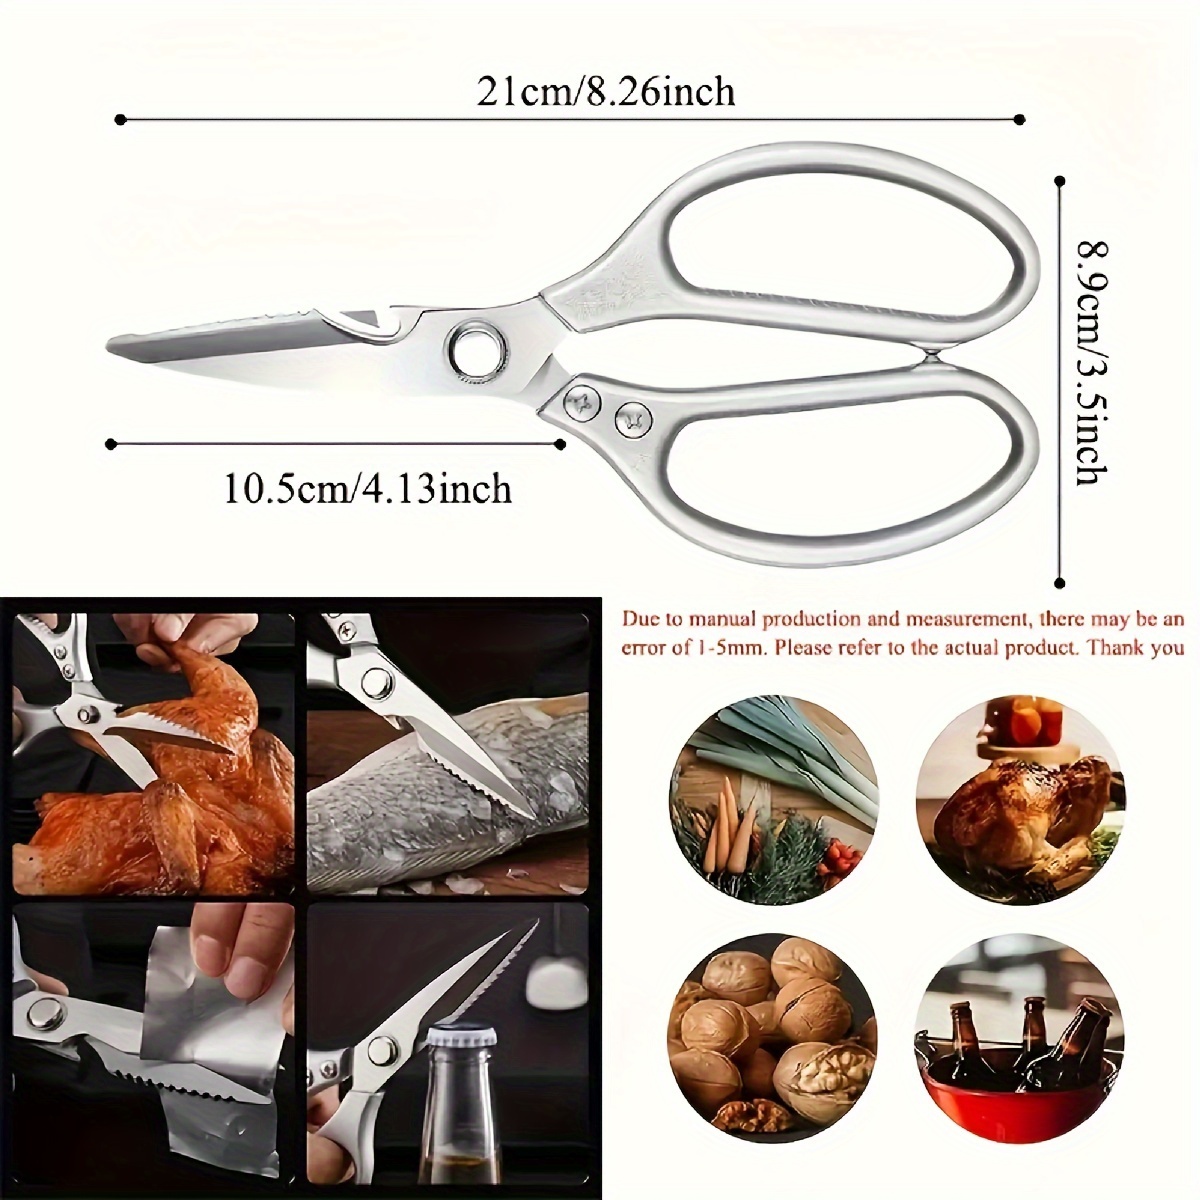 Kitchen Scissors, Multi-function Heavy Duty Kitchen Shears, 9 Inch